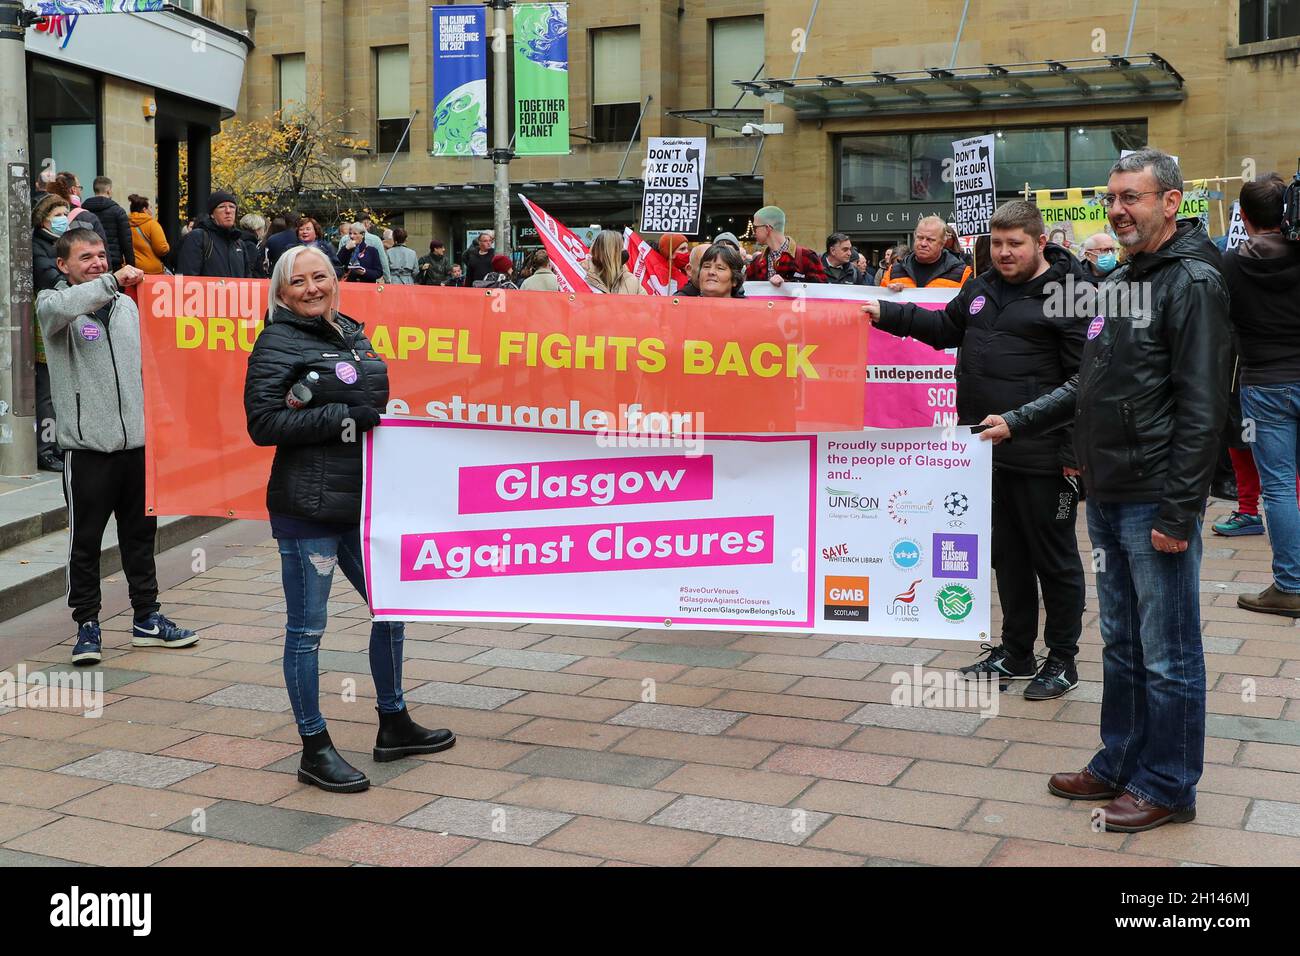 Glasgow, Reino Unido. 16th Oct, 2021. Los activistas de GLASGOW CONTRA LOS CIERRES marcharon por el centro de la ciudad de Glasgow exigiendo que todos los locales de la ciudad, incluyendo bibliotecas, museos e instalaciones deportivas, sean reabiertos después de que fueron cerrados debido a la pandemia de Covid 19. El mes pasado, GLASGOW CONTRA LOS CIERRES celebró una manifestación fuera del Parlamento escocés exigiendo la financiación adecuada para los locales. el ayuntamiento de Glasgow ha reabierto algunas de las instalaciones, pero afirma haber perdido más de £38 millones de ingresos debido a la pandemia. Crédito: Findlay/Alamy Live News Foto de stock